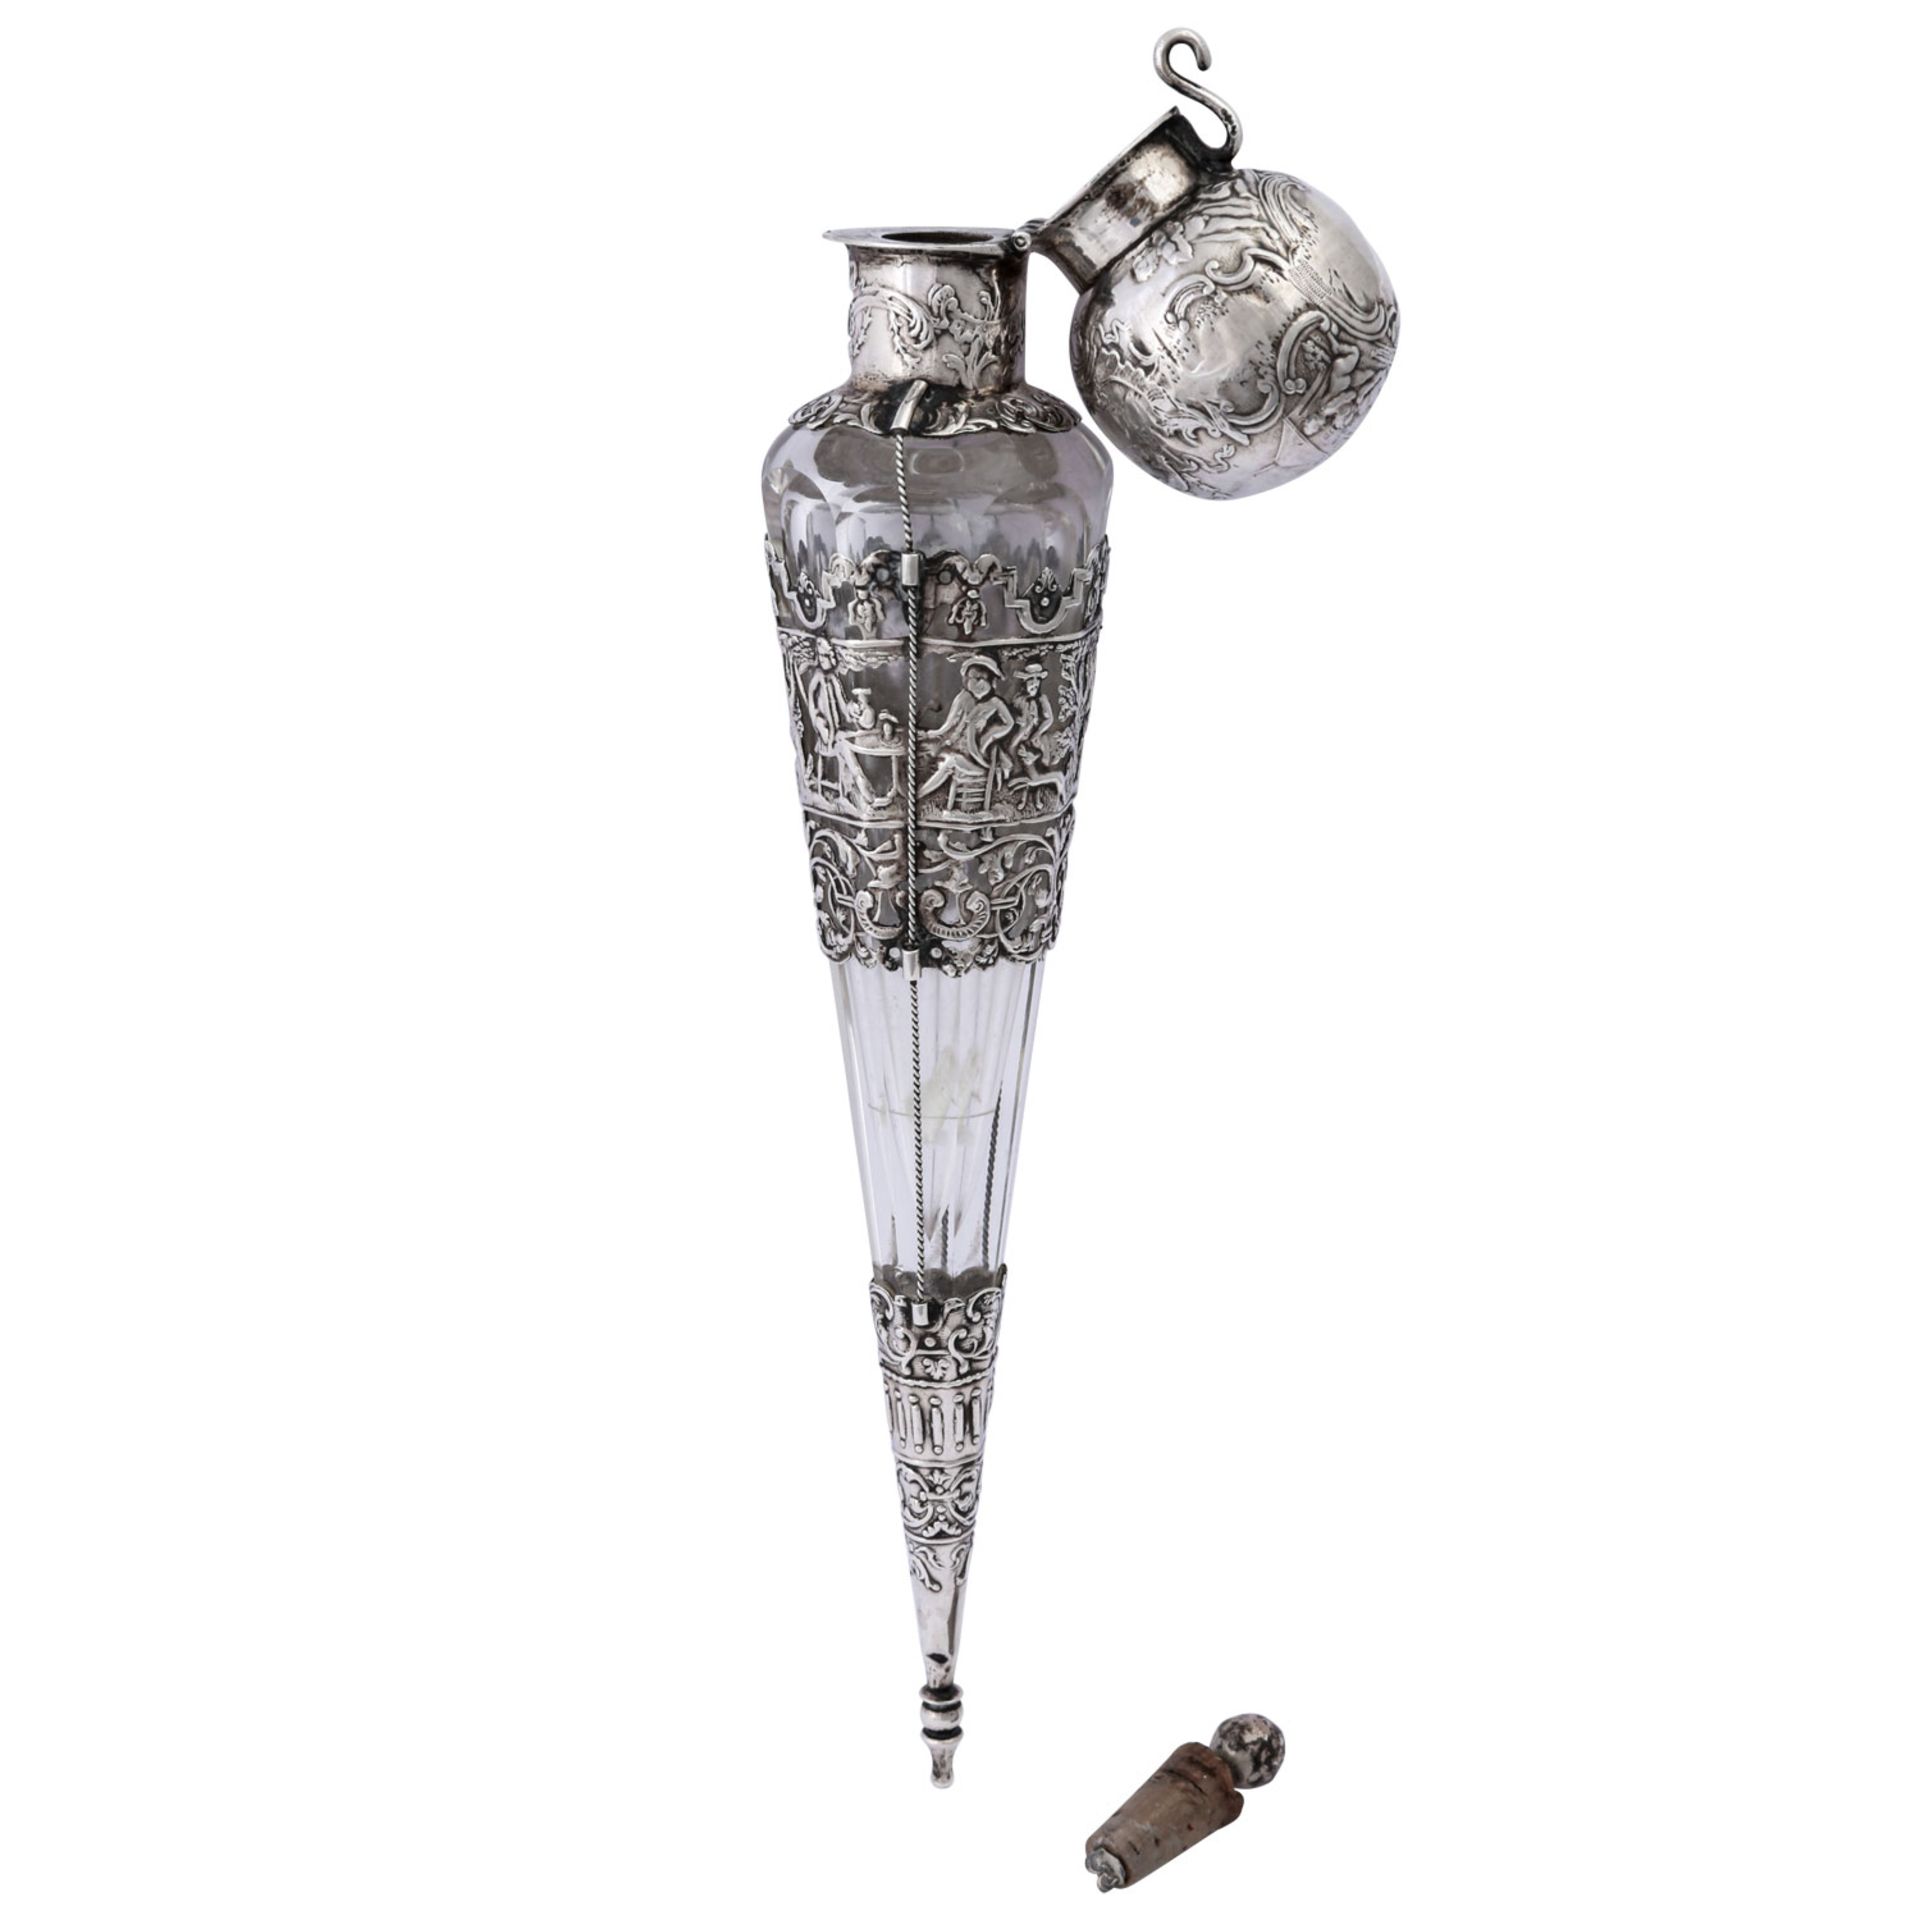 NIEDERLANDE außergewöhnlicher Glasflakon mit Silber-Montur, Ende des 19. Jhd..Flakon - Image 2 of 5